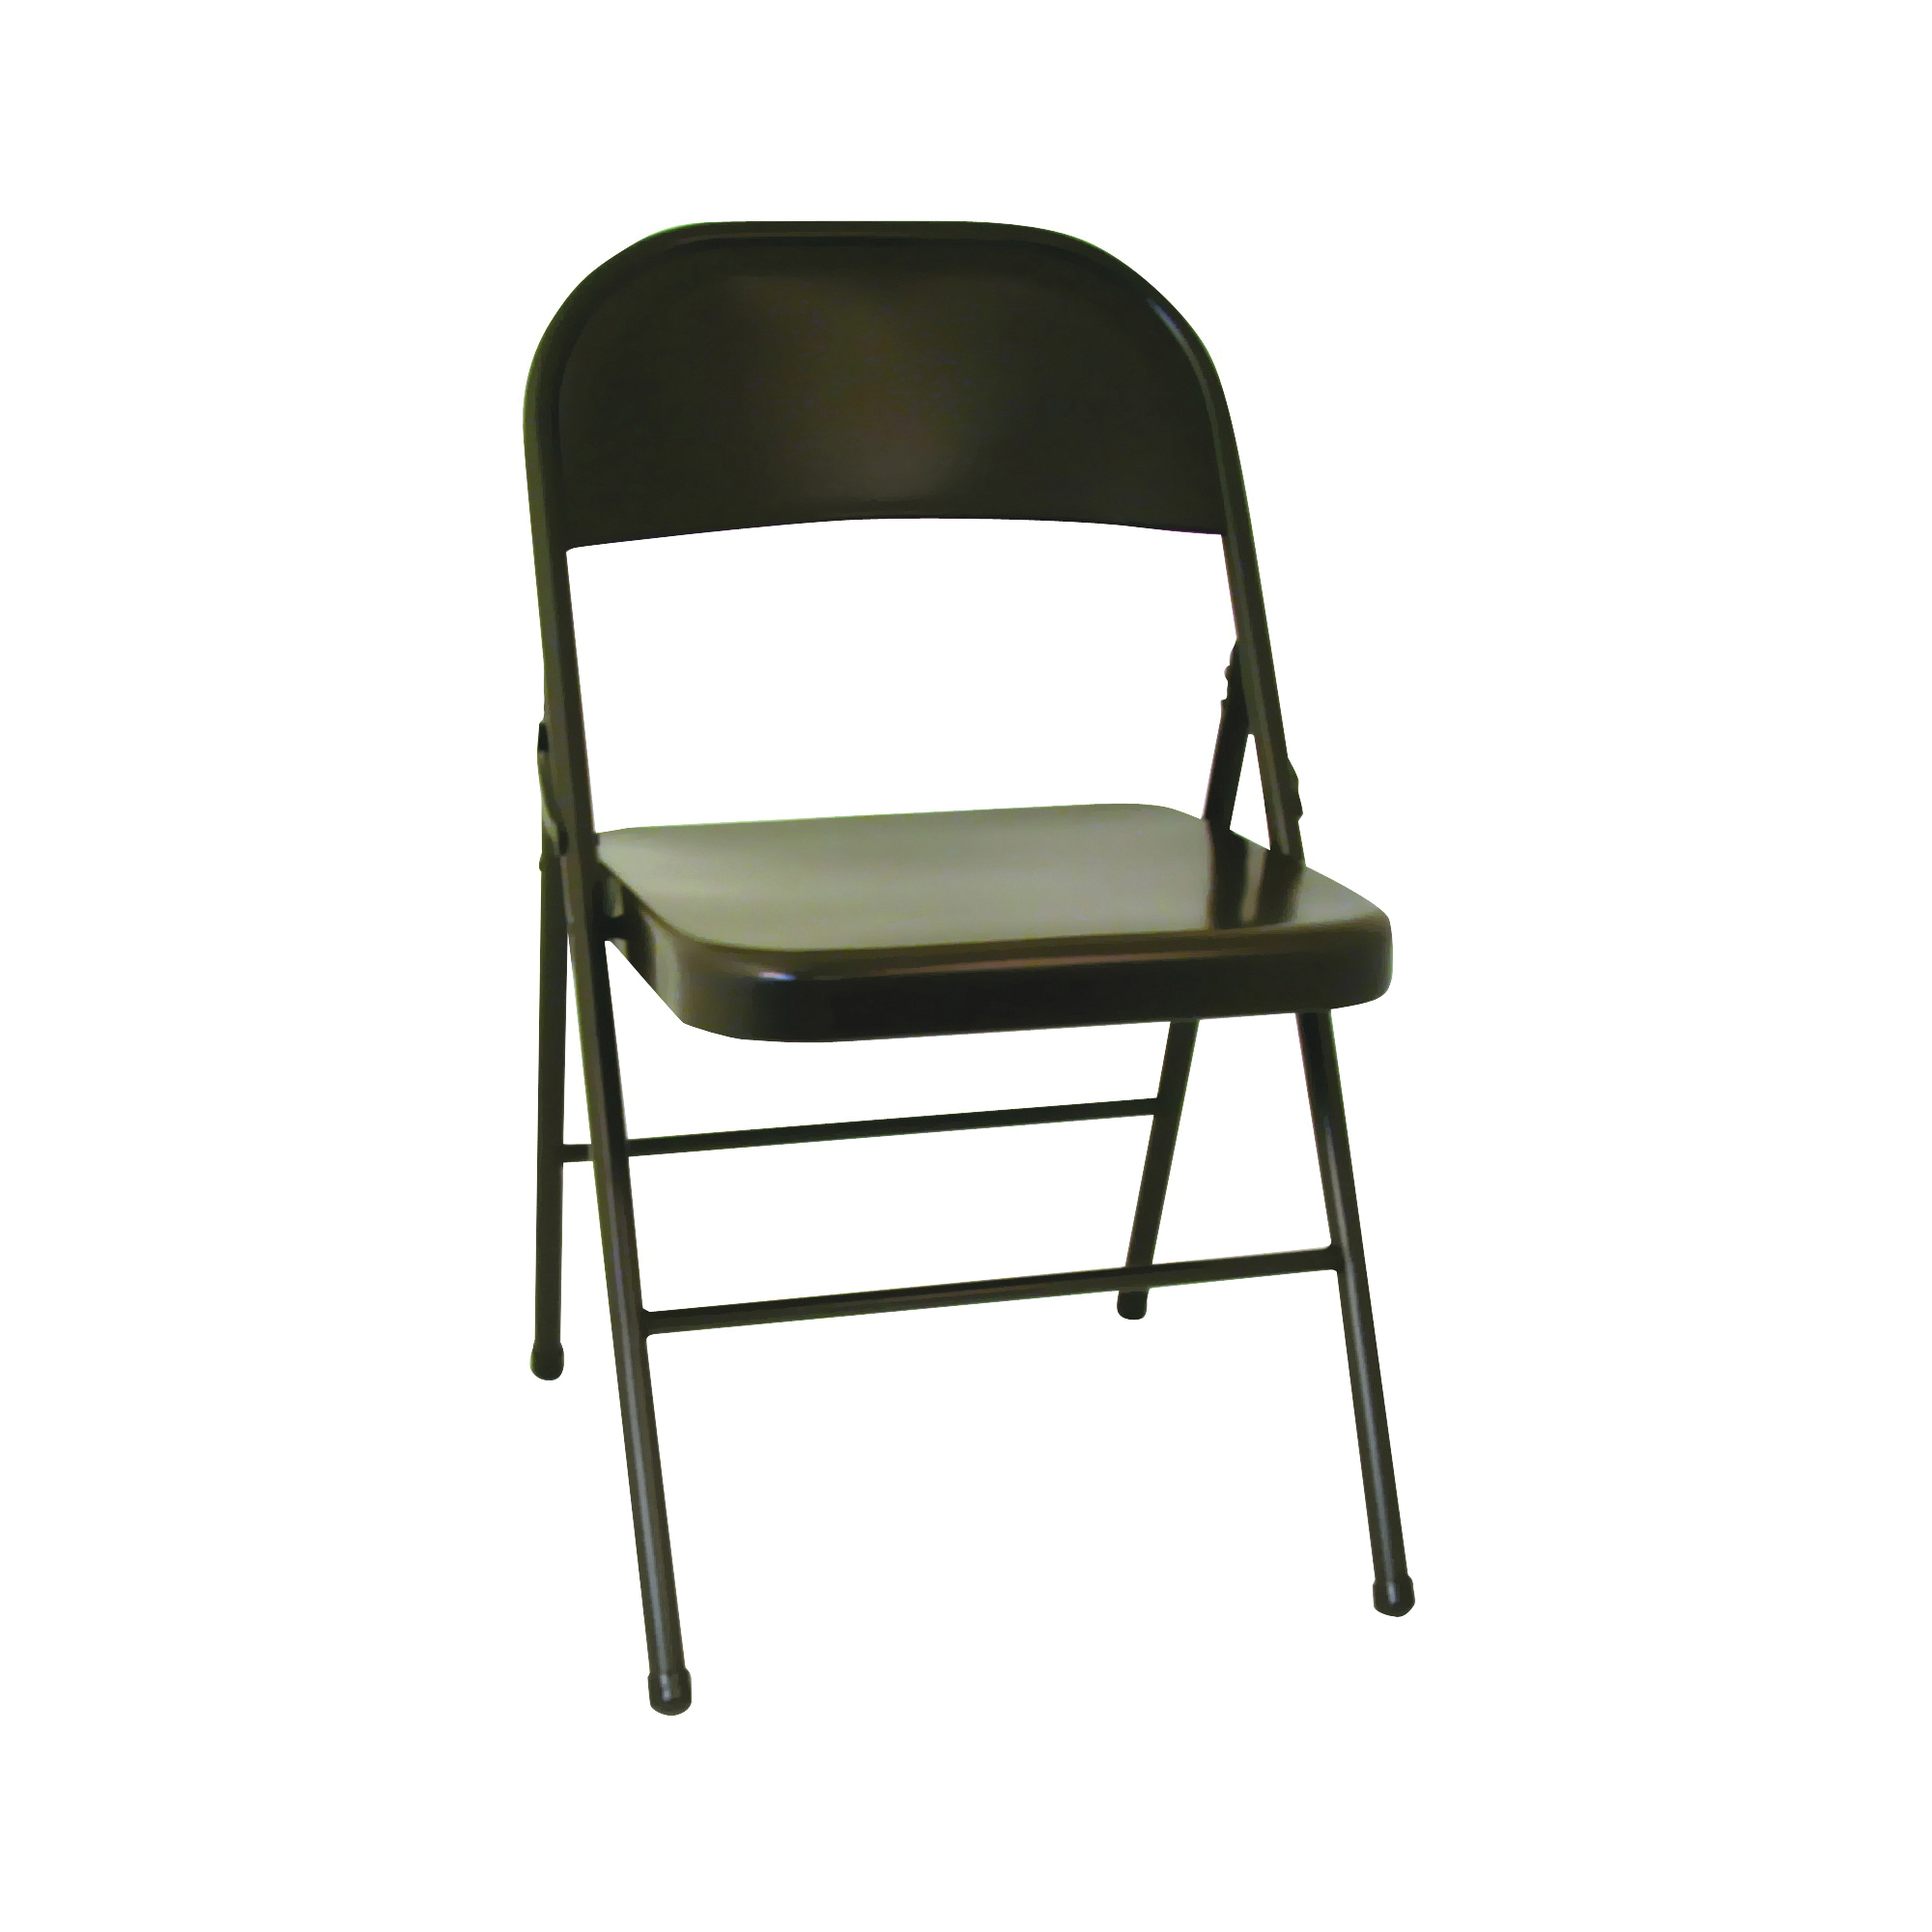 14-711 05X/147110 Folding Chair, 18-1/2 in OAW, 5-1/2 in OAD, 39-1/2 in OAH, Steel Frame, Vinyl Tabletop